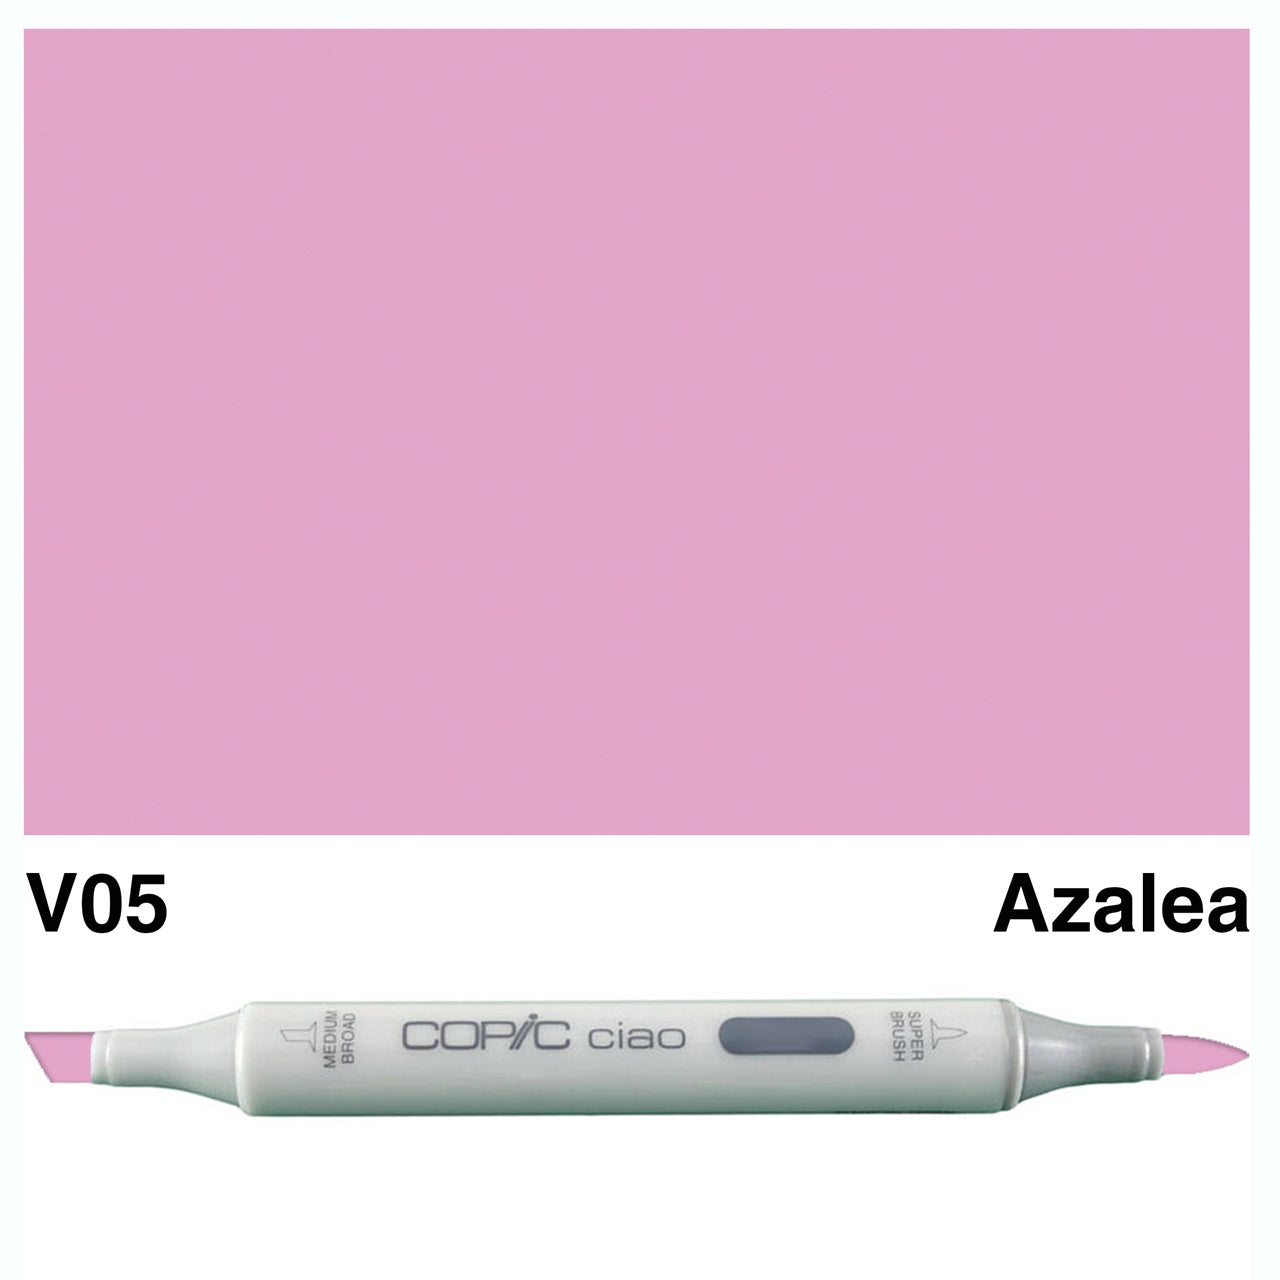 Copic Ciao Marker V05 - Azalea